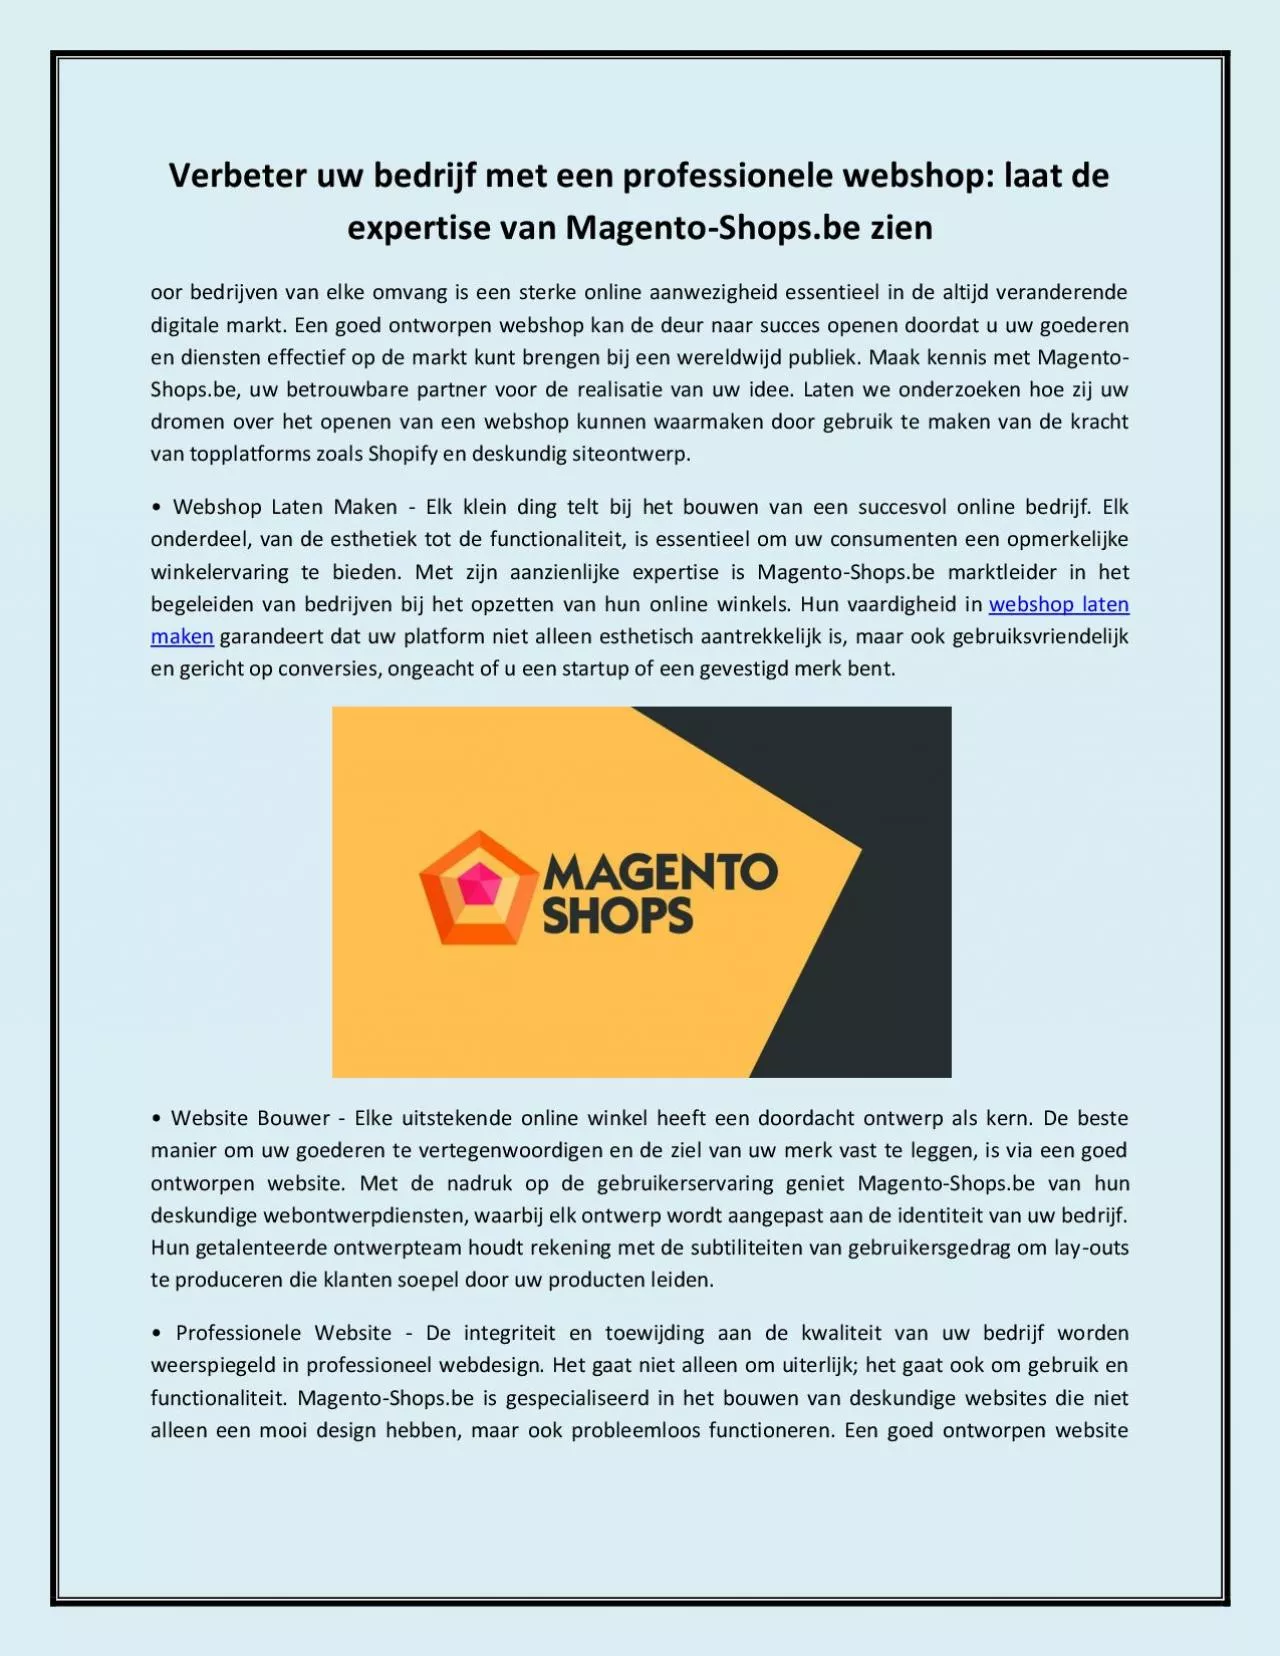 Verbeter uw bedrijf met een professionele webshop: laat de expertise van Magento-Shops.be